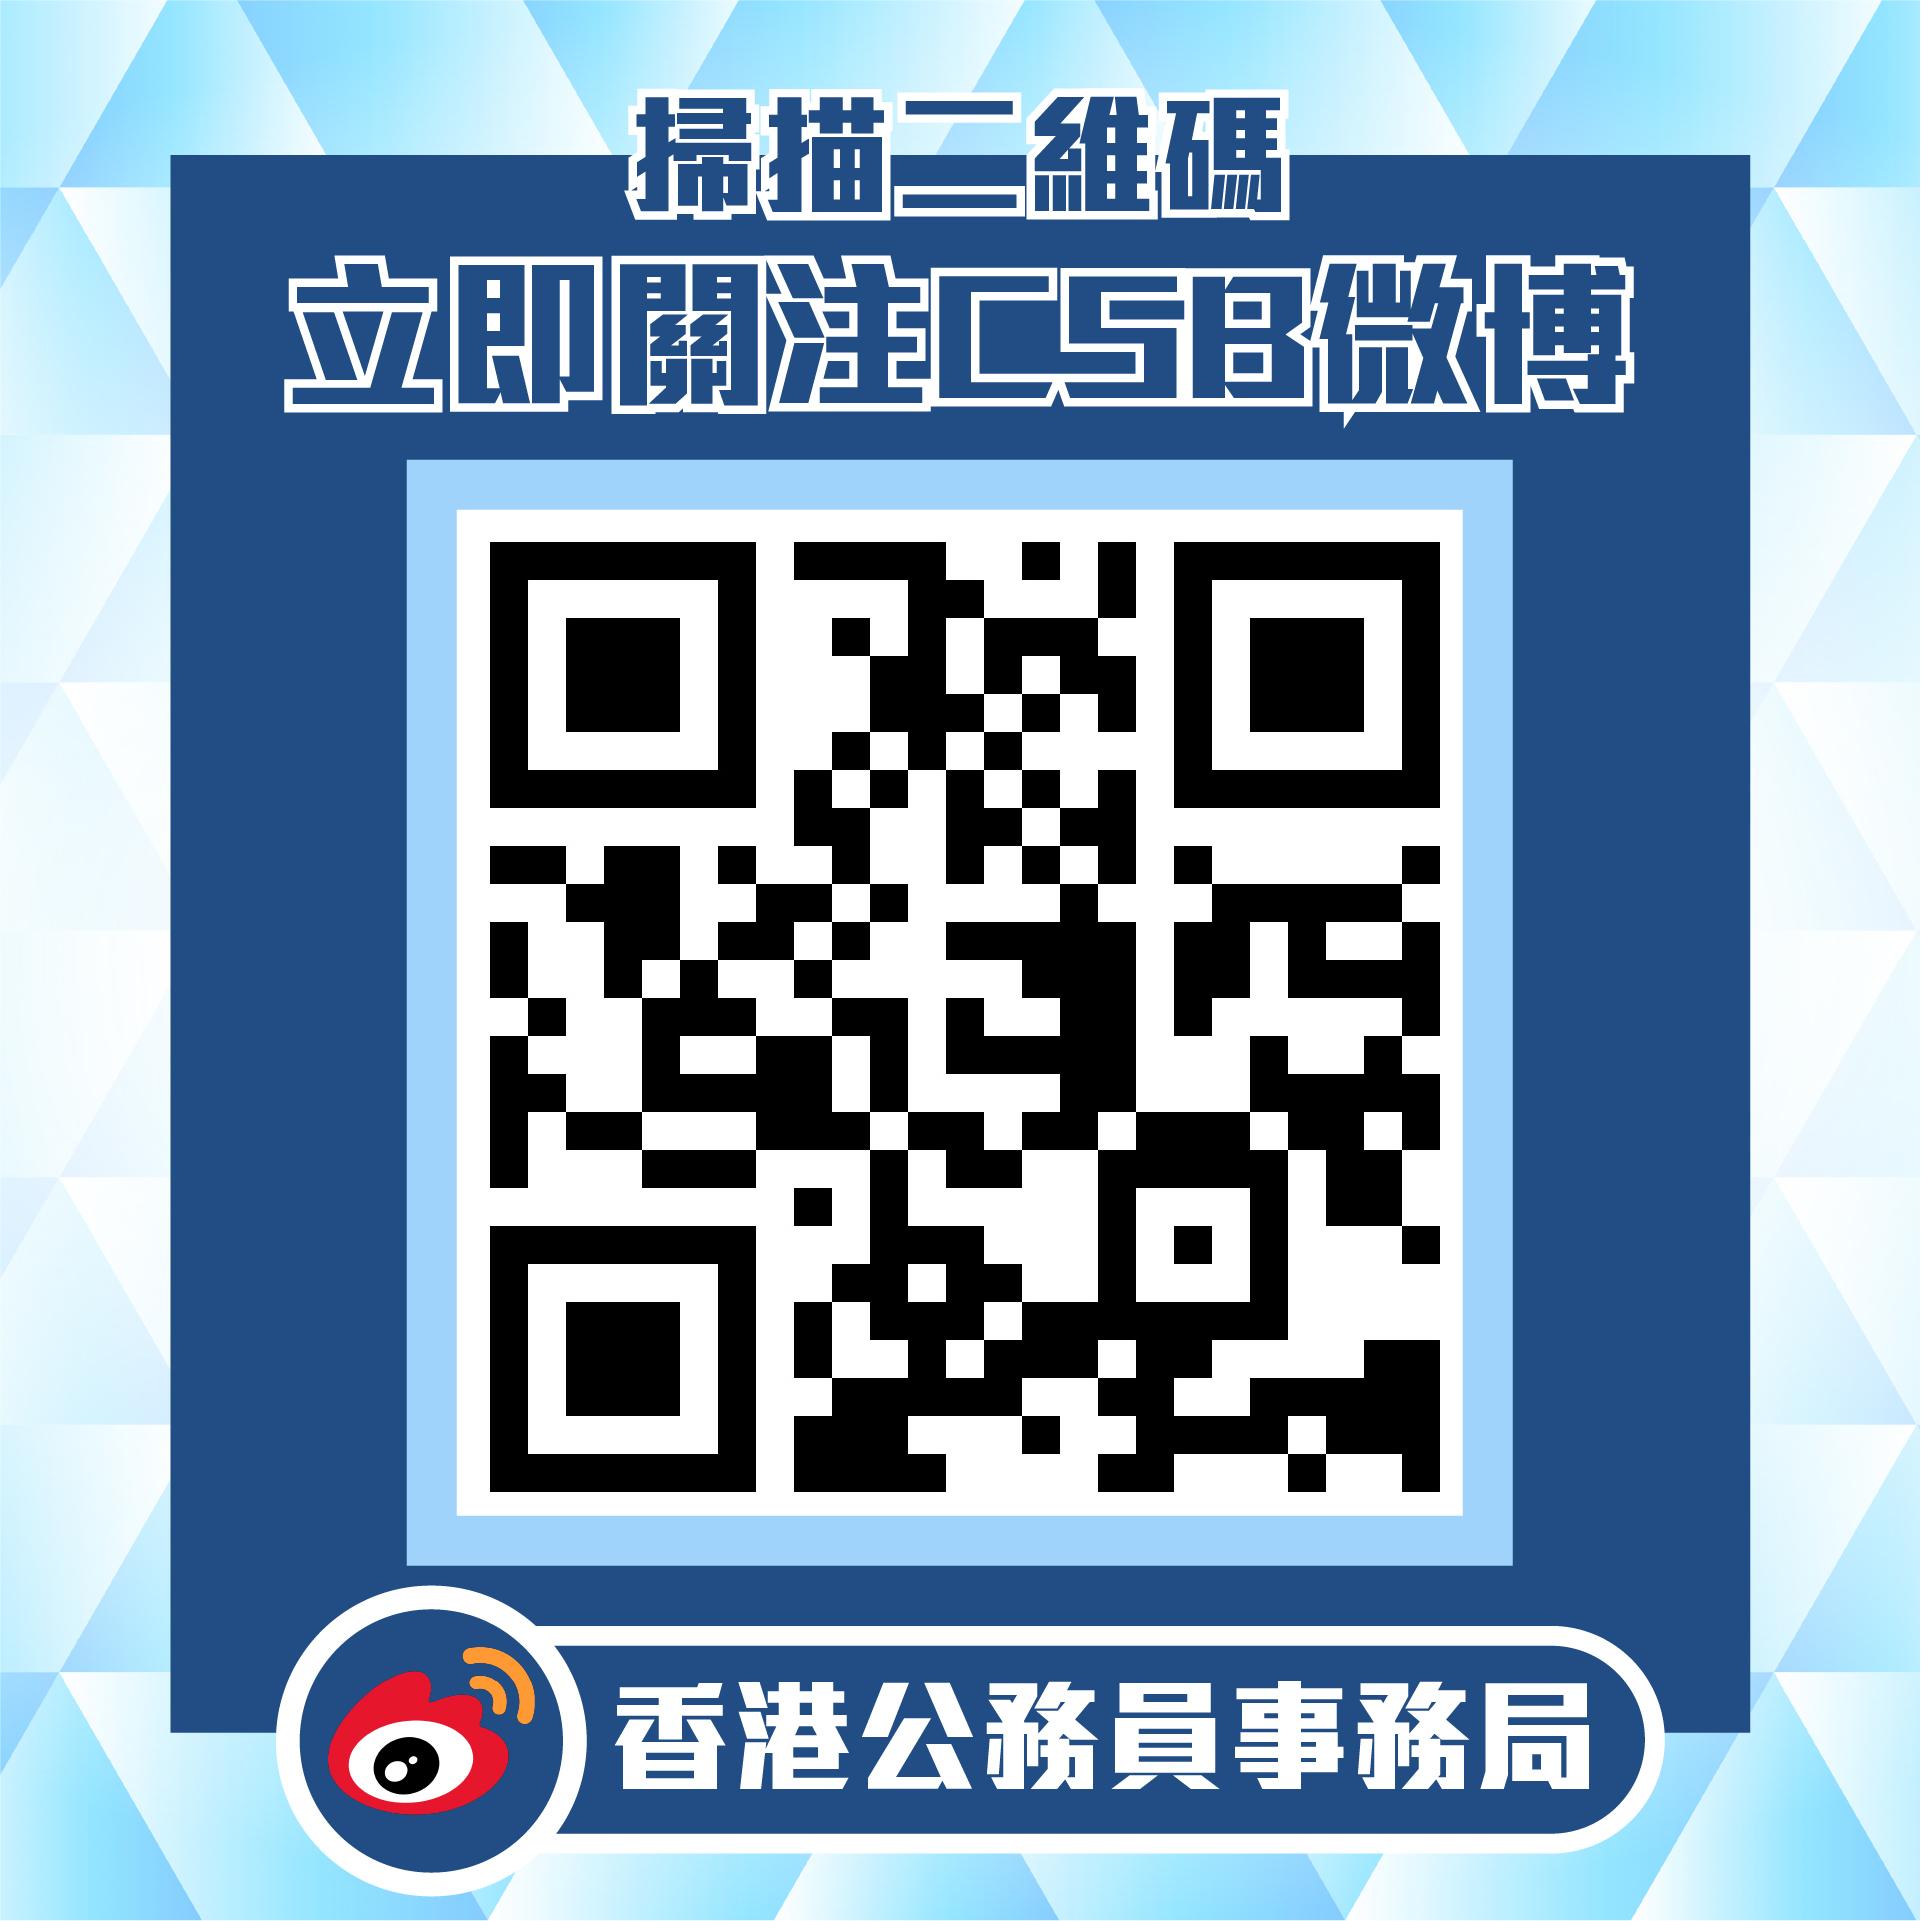 公务员事务局微博官方帐号今日（十月一日）正式启用。图示「香港公务员事务局」微博官方帐号的二维码。